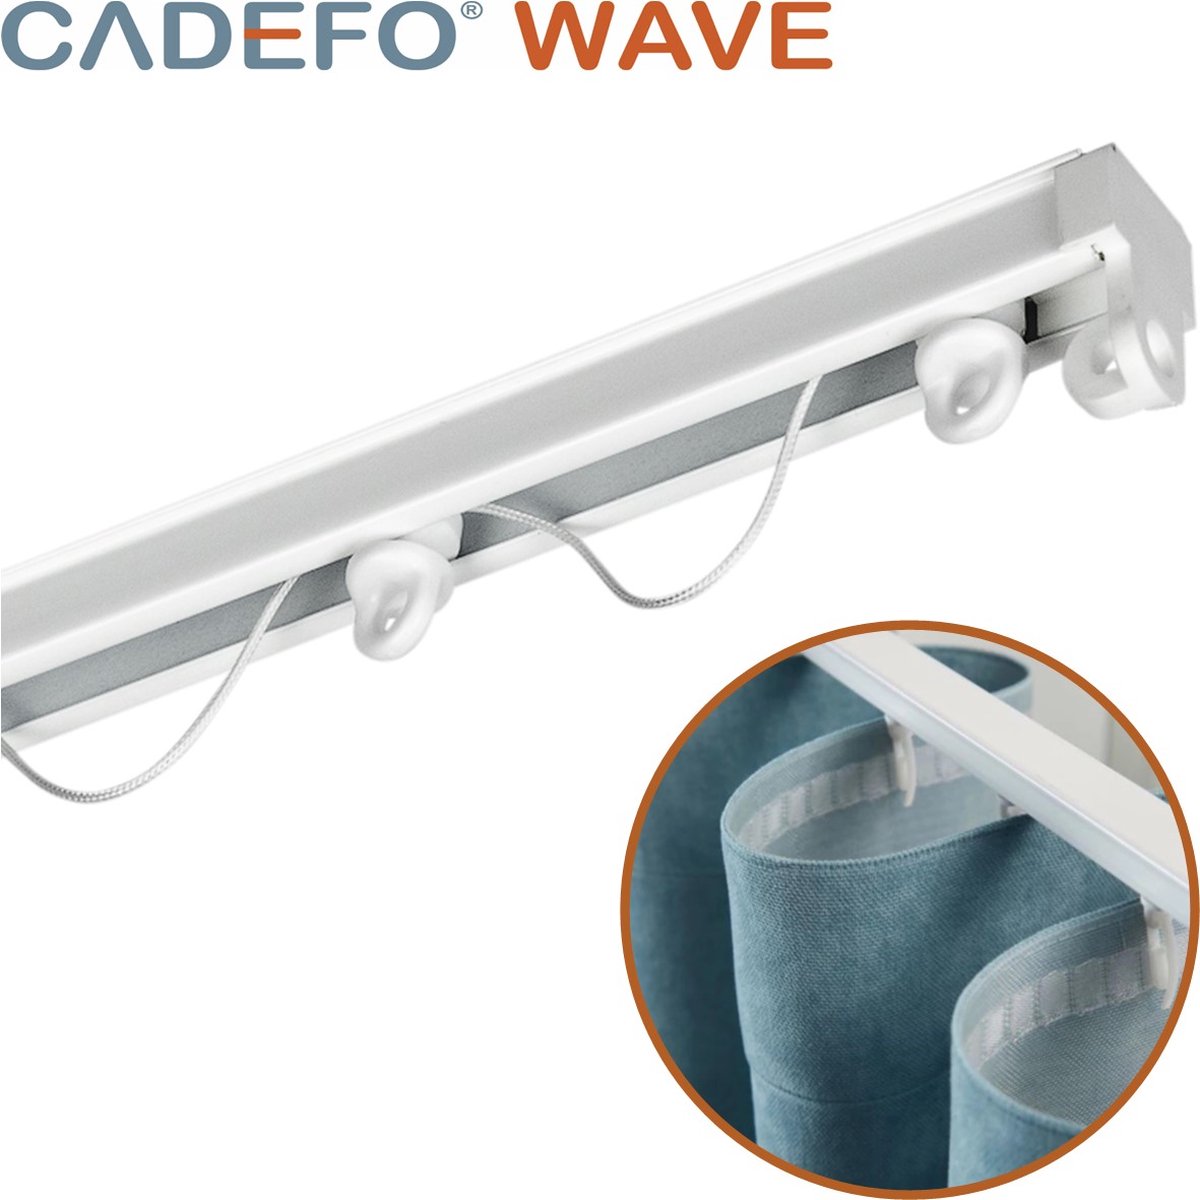 CADEFO WAVE (401 - 450 cm) Gordijnrails - Compleet op maat! - UIT 1 STUK - Leverbaar tot 6 meter - Plafondbevestiging - Lengte 420 cm